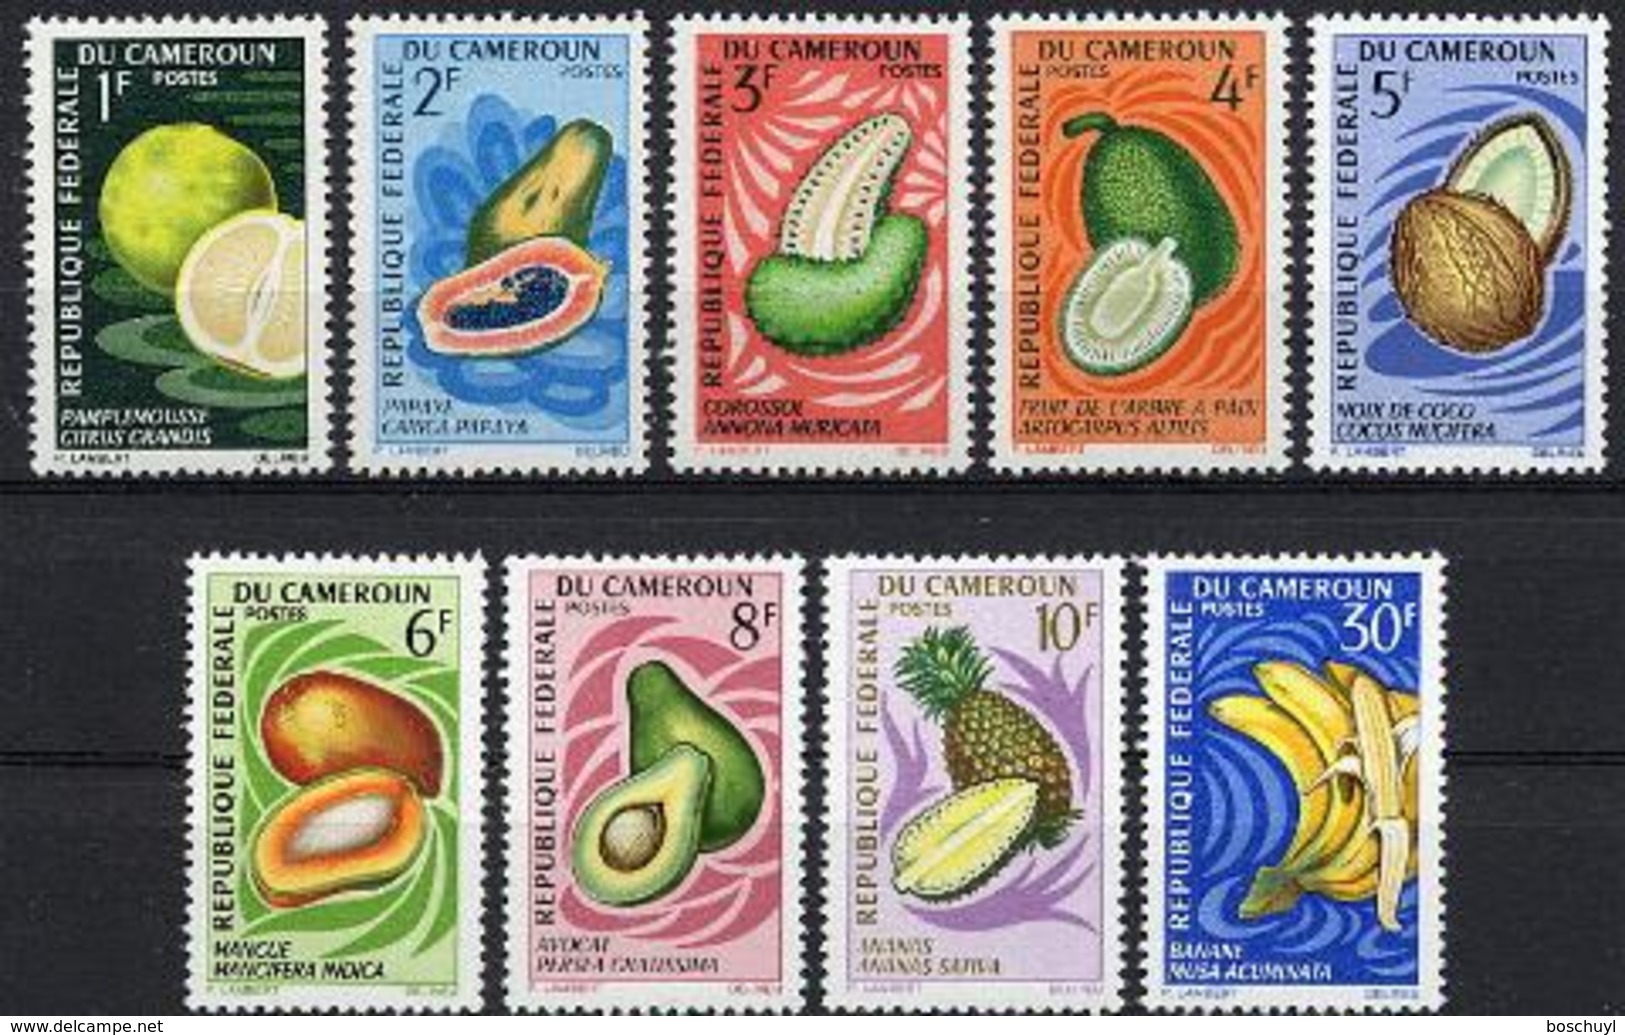 Cameroun, 1967, Fruits, Food, MNH, Michel 506-514 - Cameroun (1960-...)